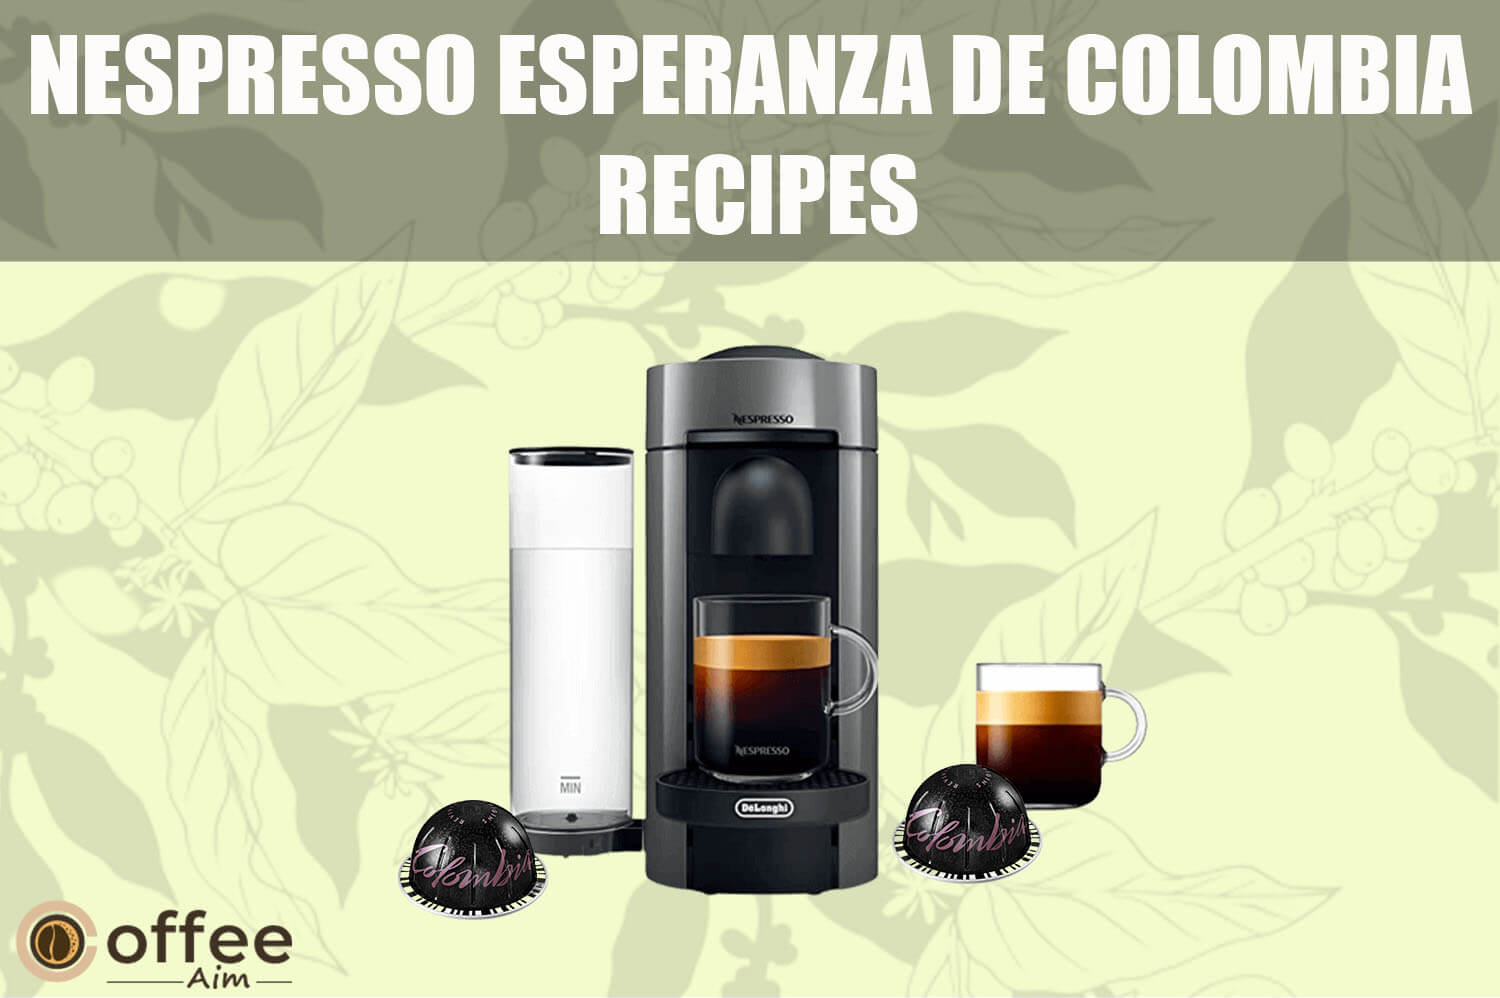 Featured image for the article "Nespresso Esperanza De Colombia Recipes"